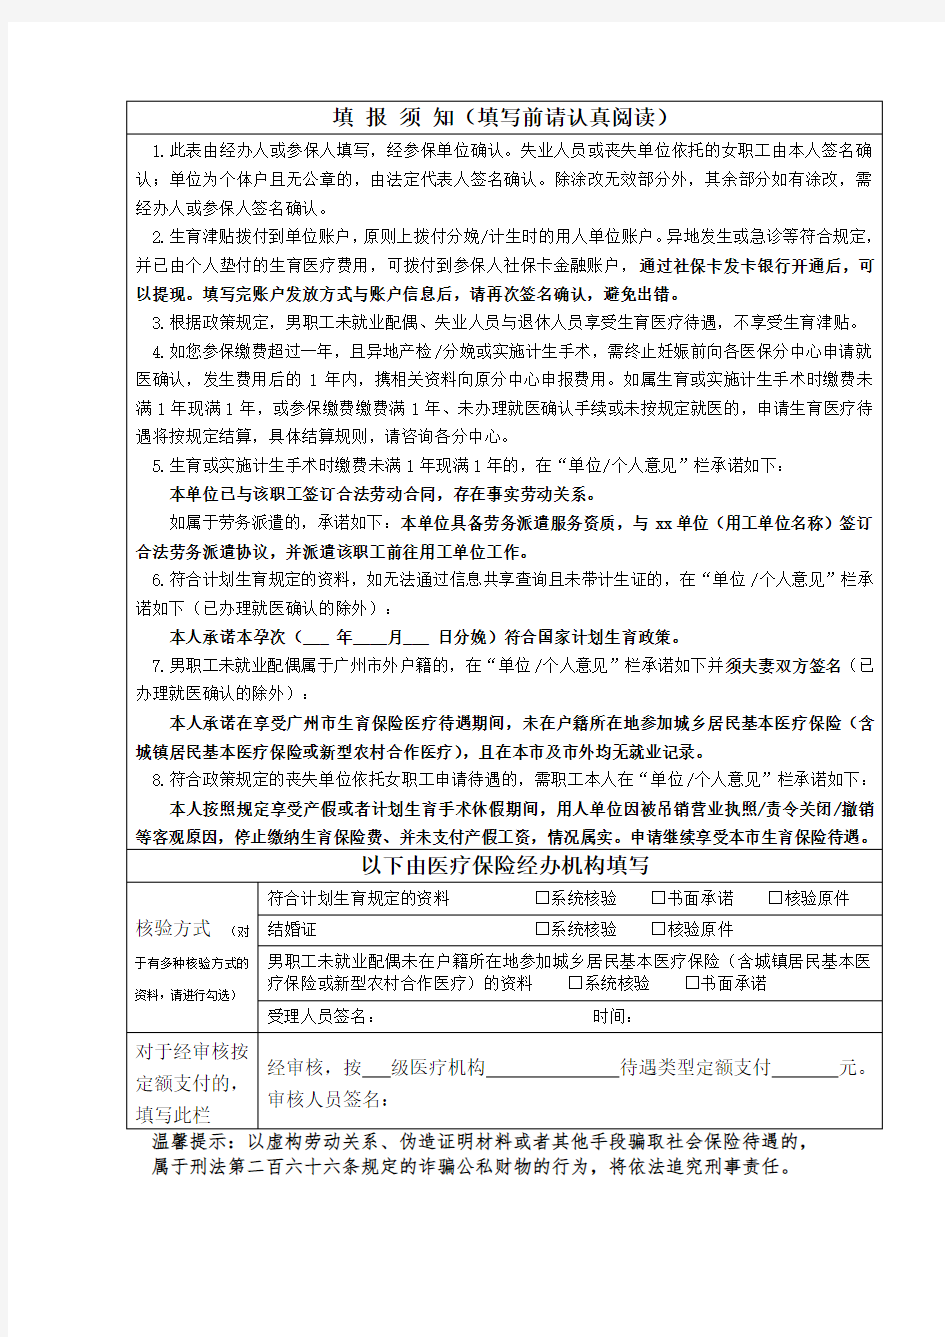 广州市职工生育保险待遇申请表(2020年最新版)